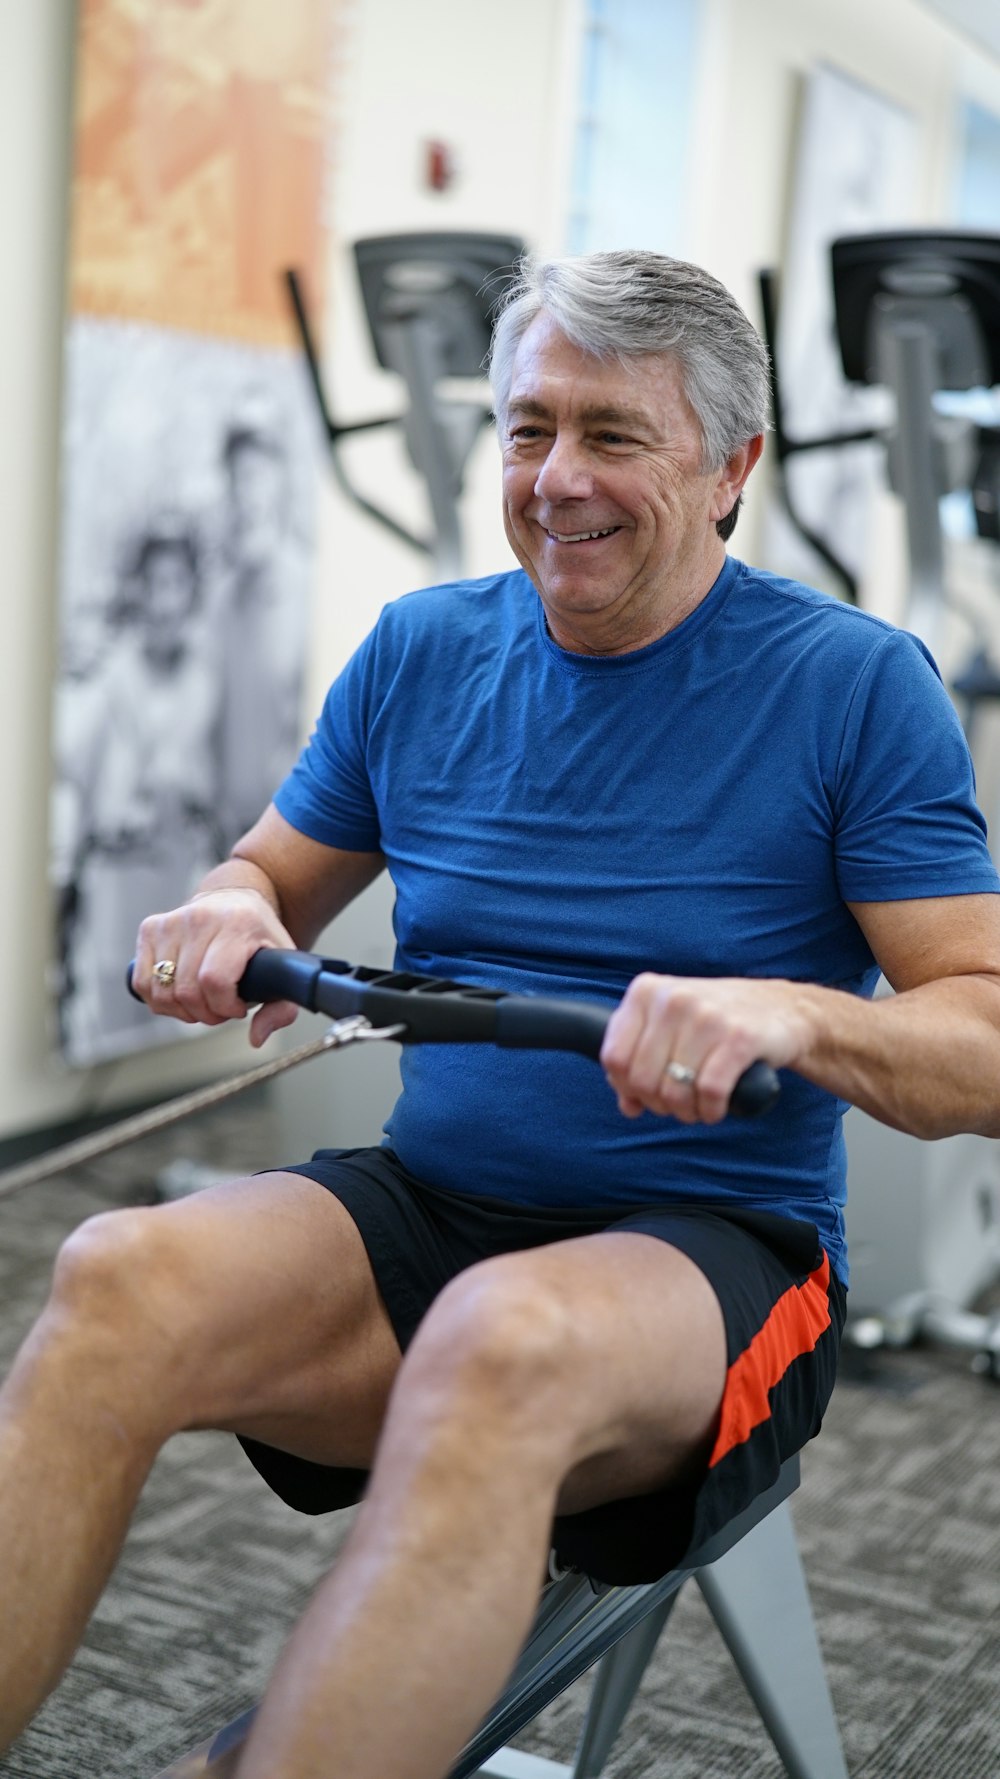 man exercising while smiling